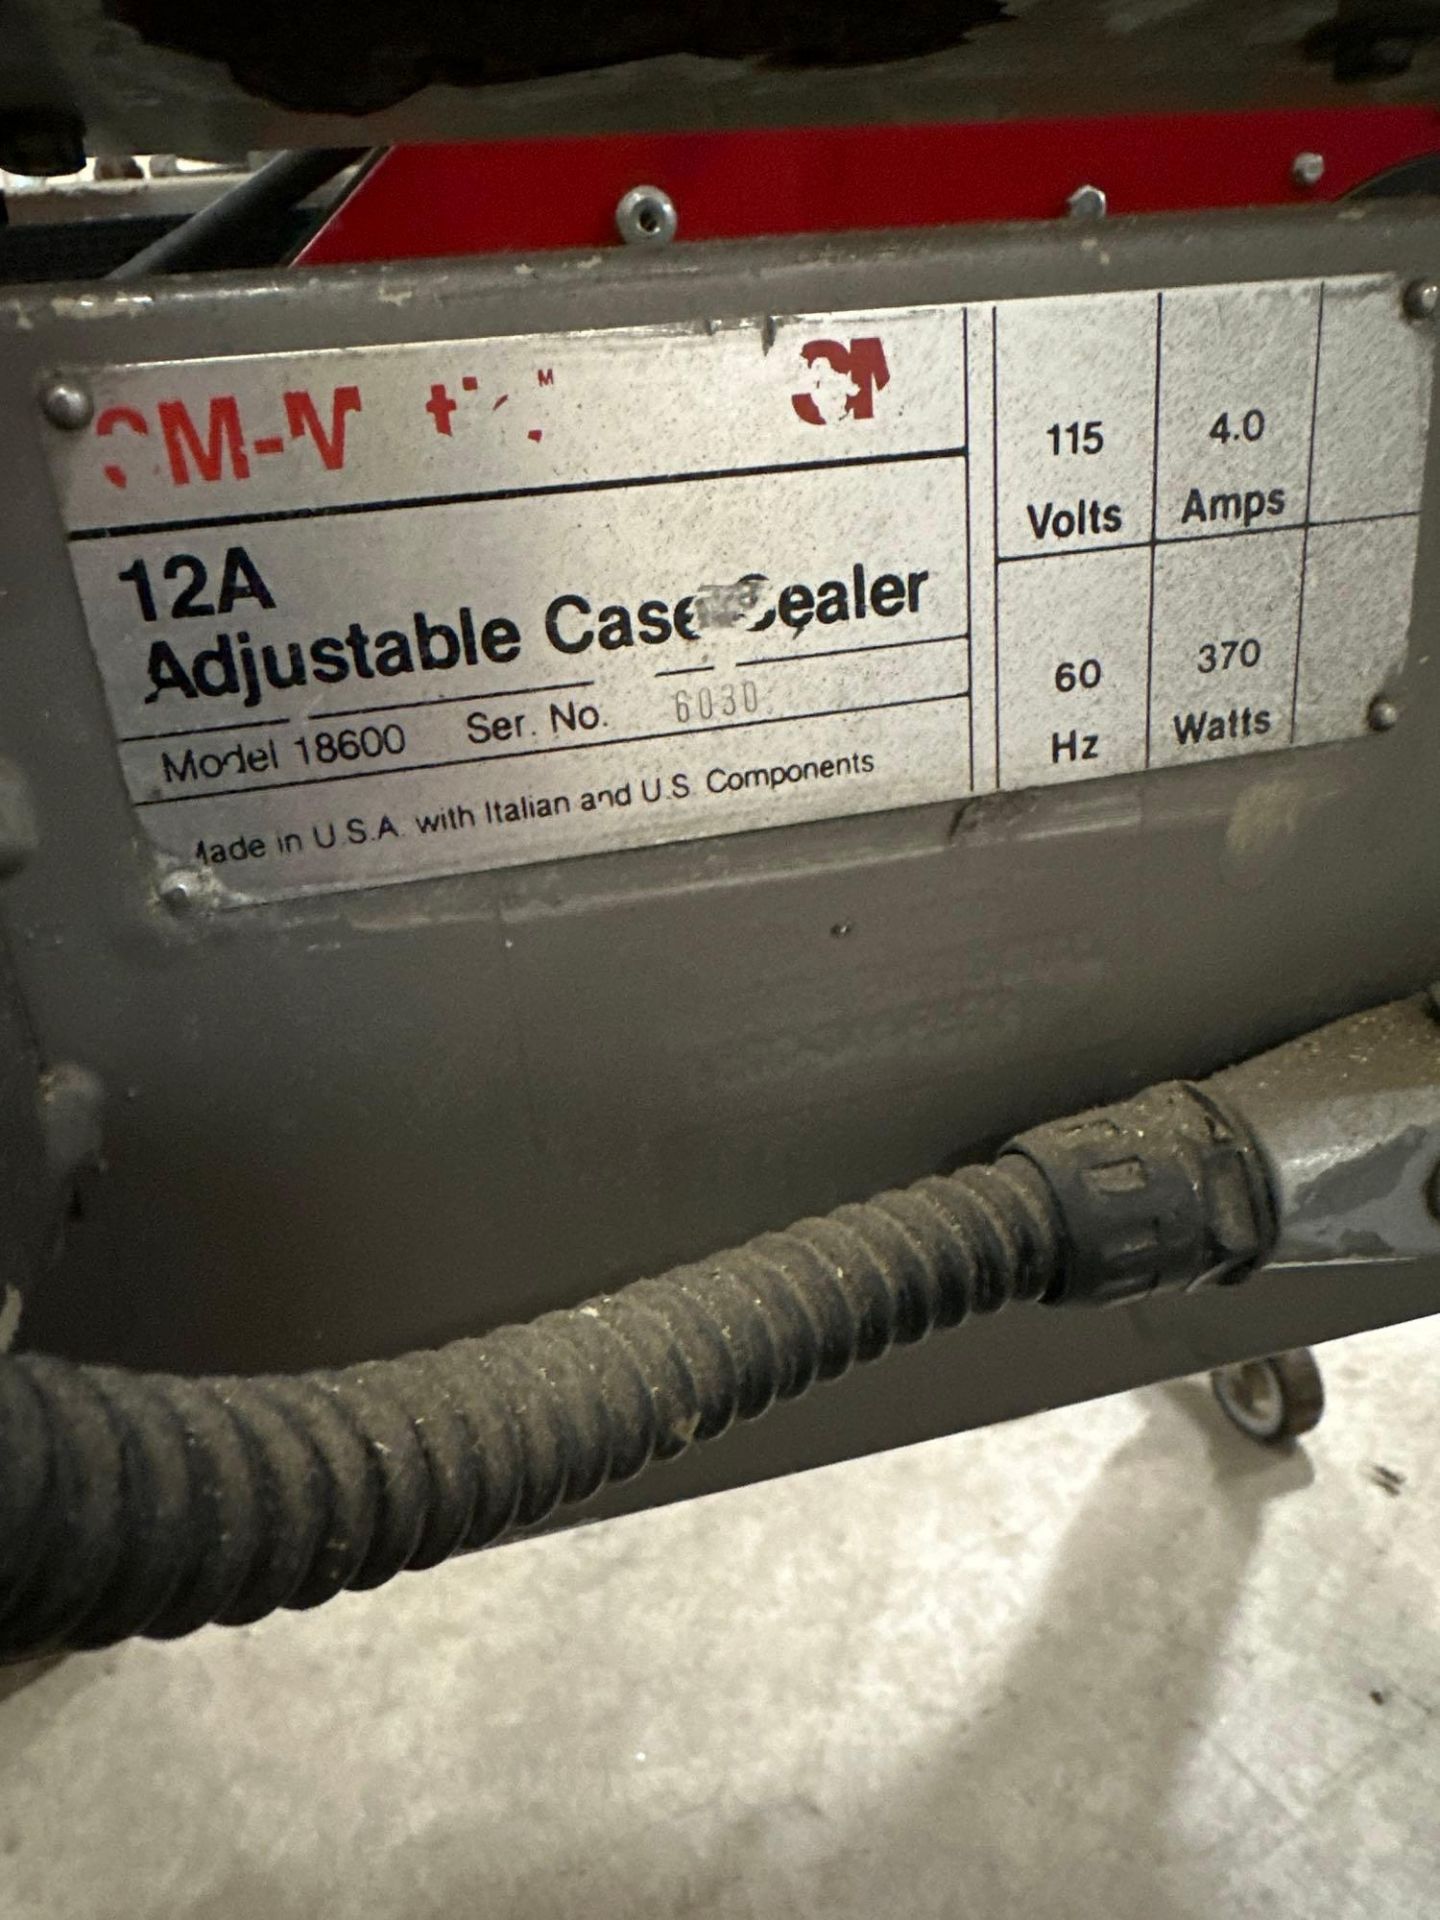 Adjustable Case Sealer - Image 8 of 9